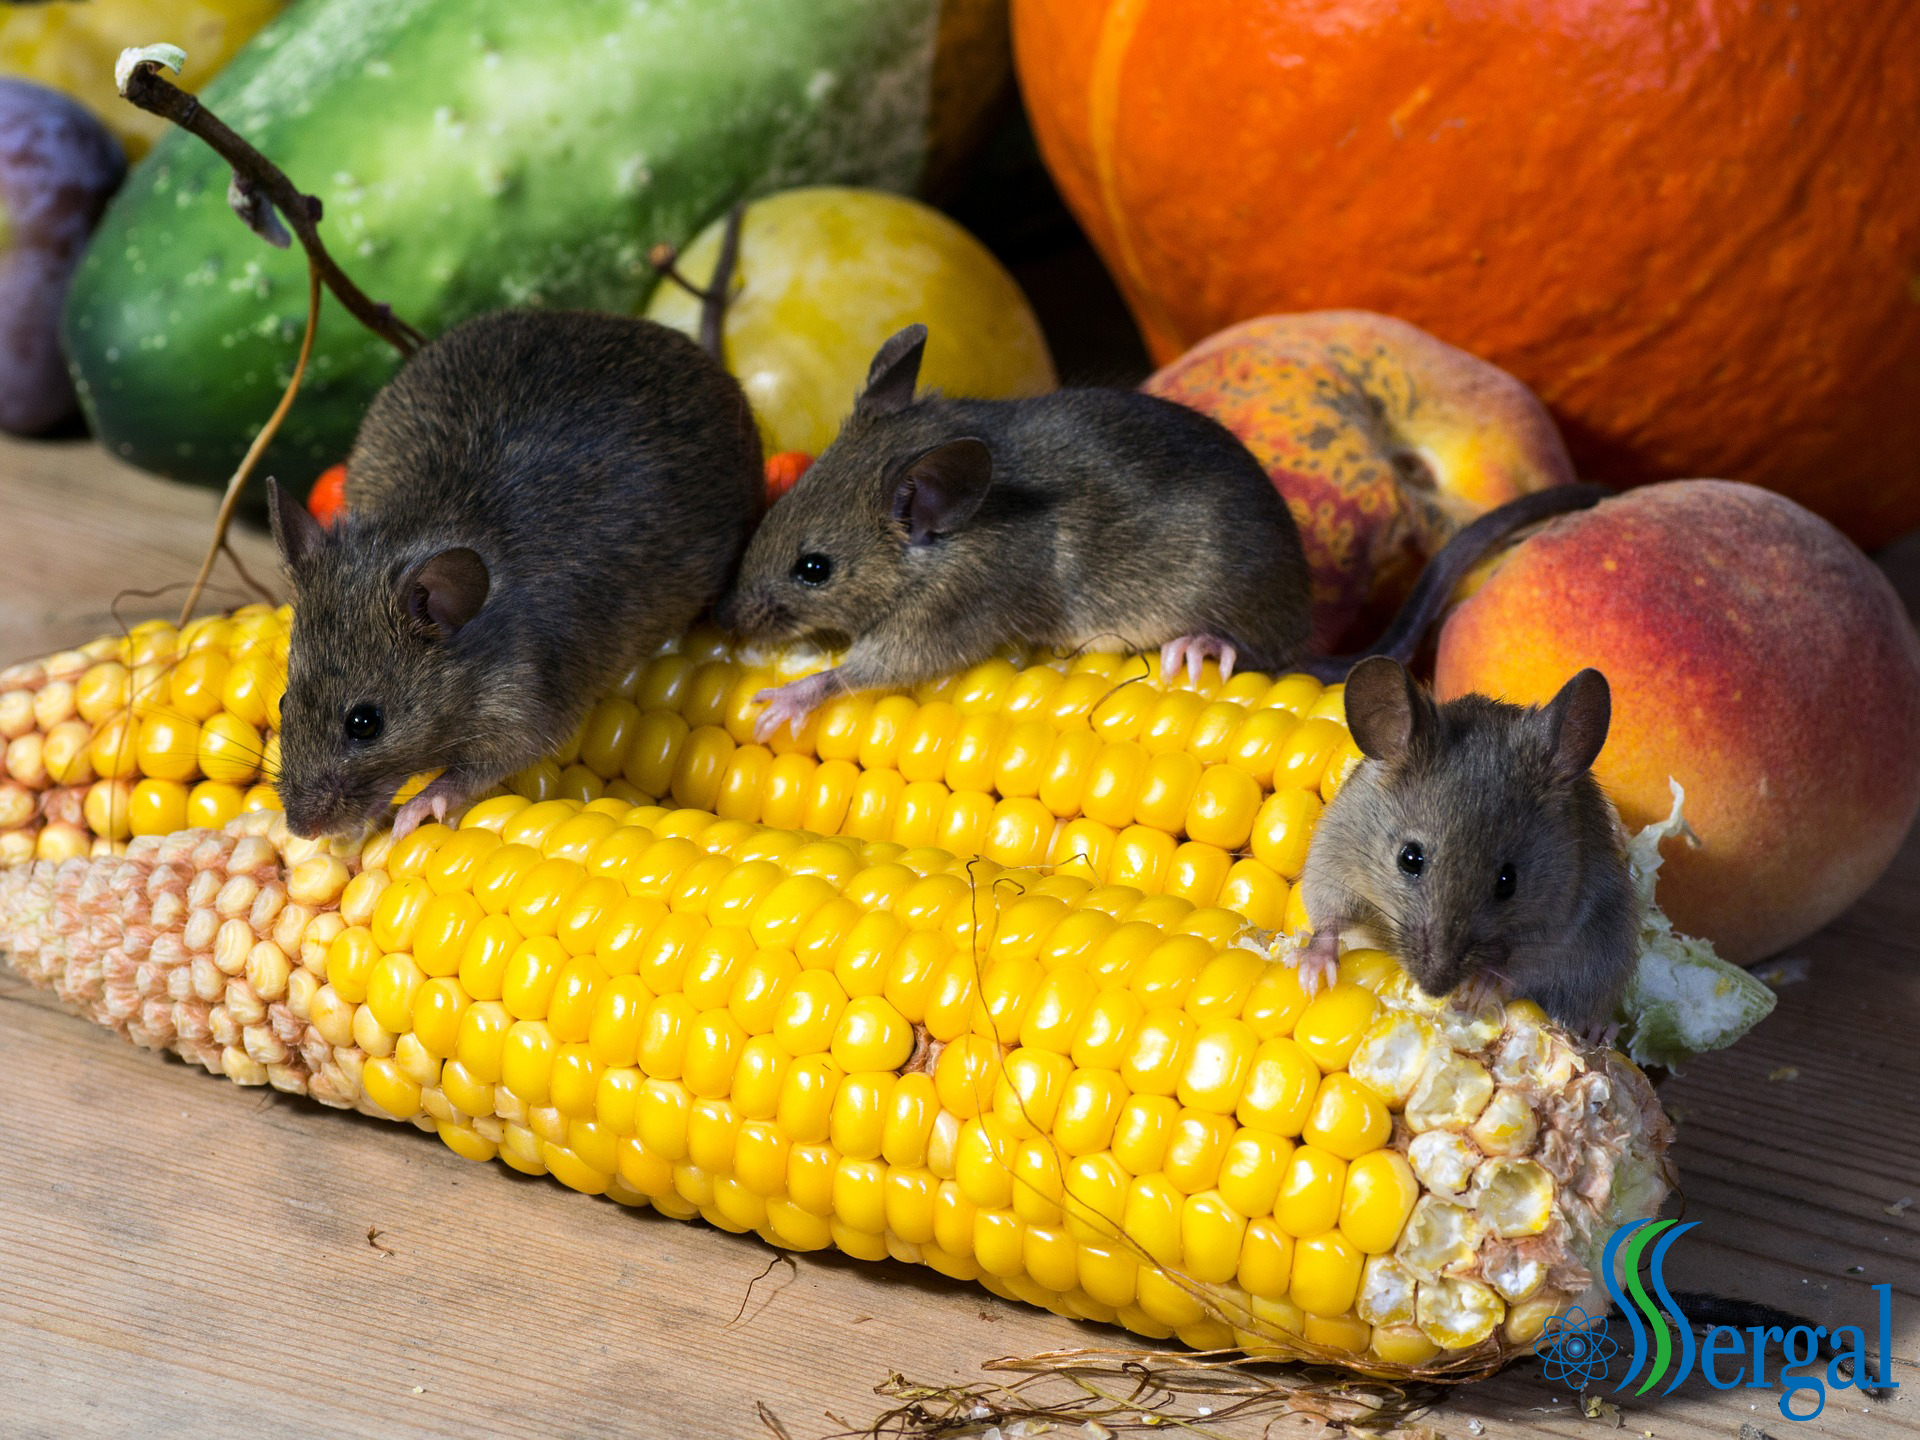 Plaga de ratones en casa: te ayudamos a combatirlos